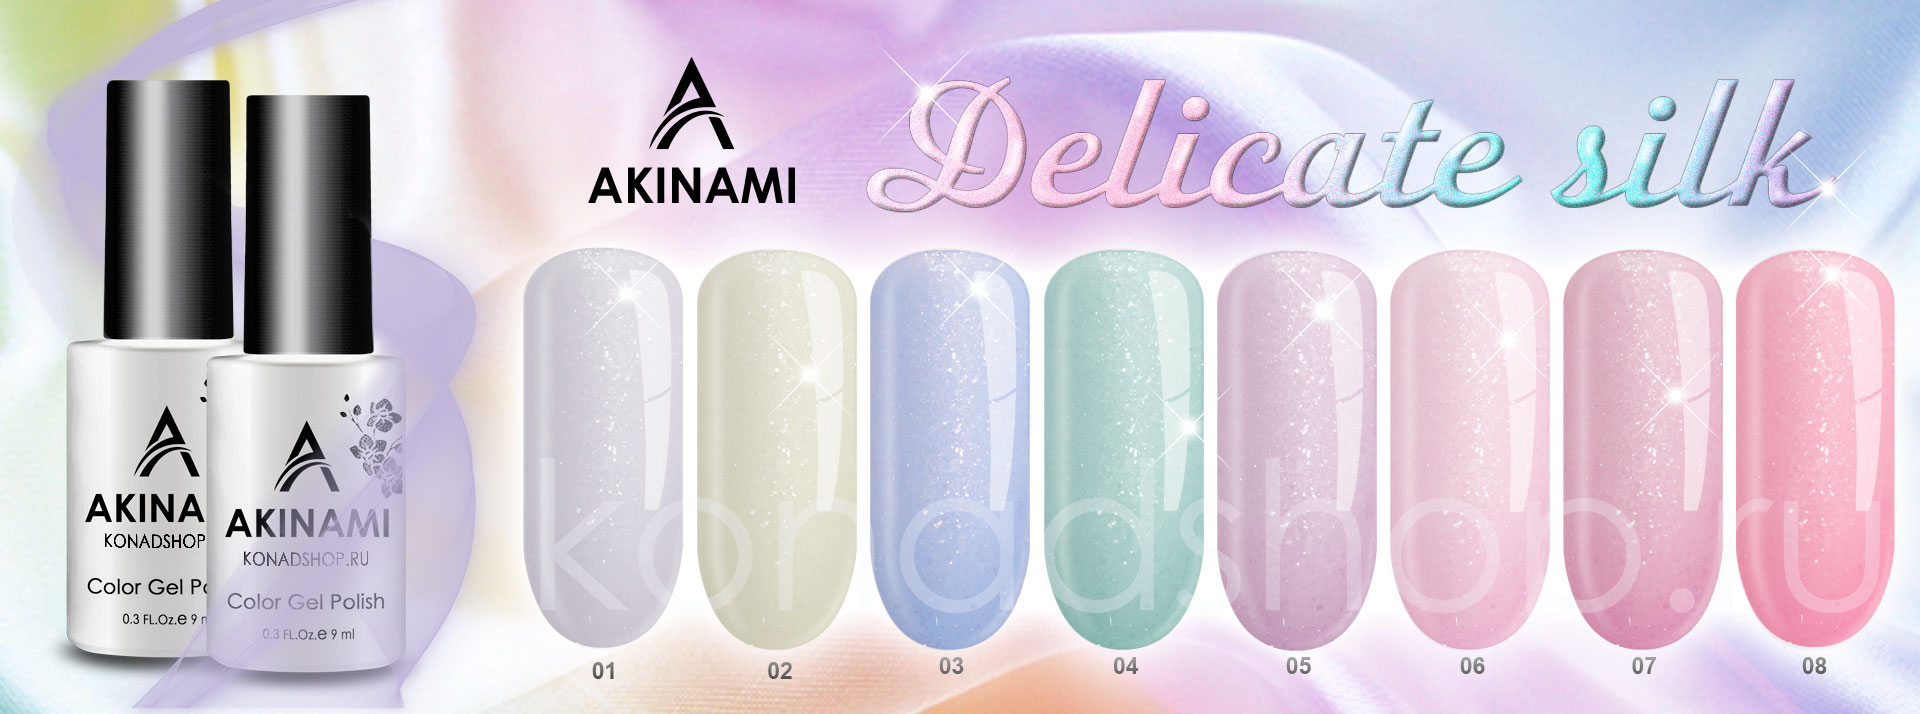 delicate-silk